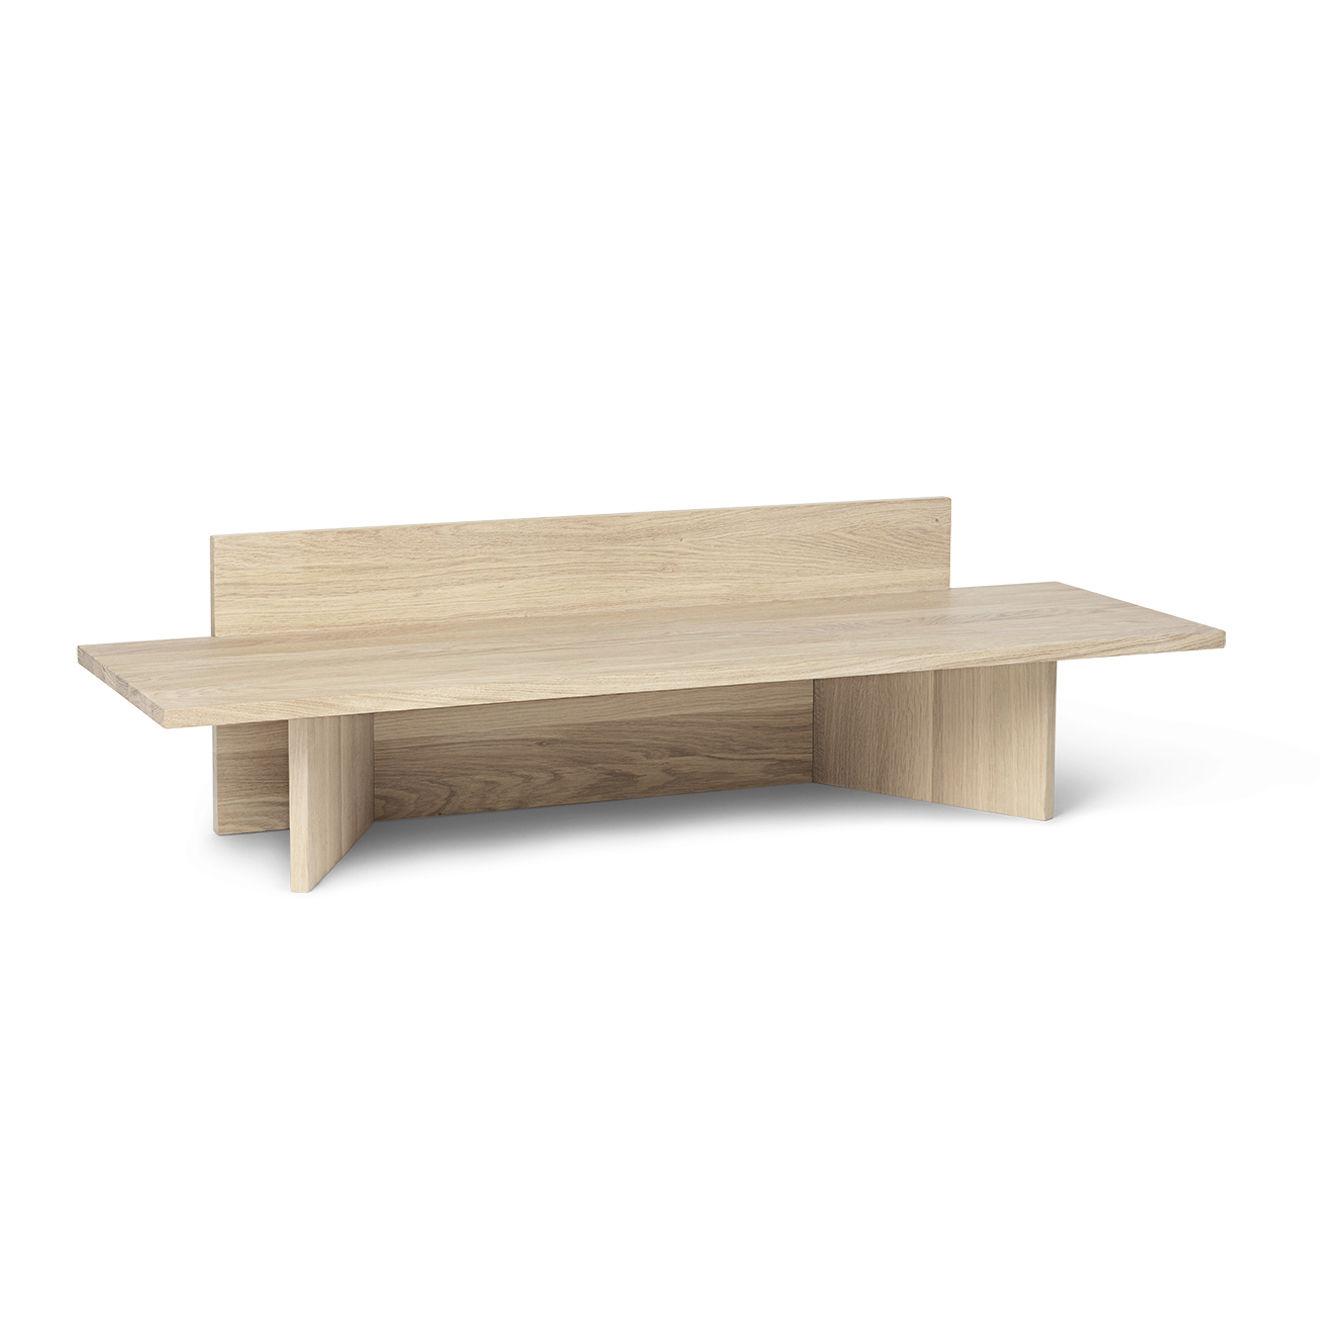 Banc Oblique / Console basse - Bois / L 120 cm - Ferm Living bois naturel en bois